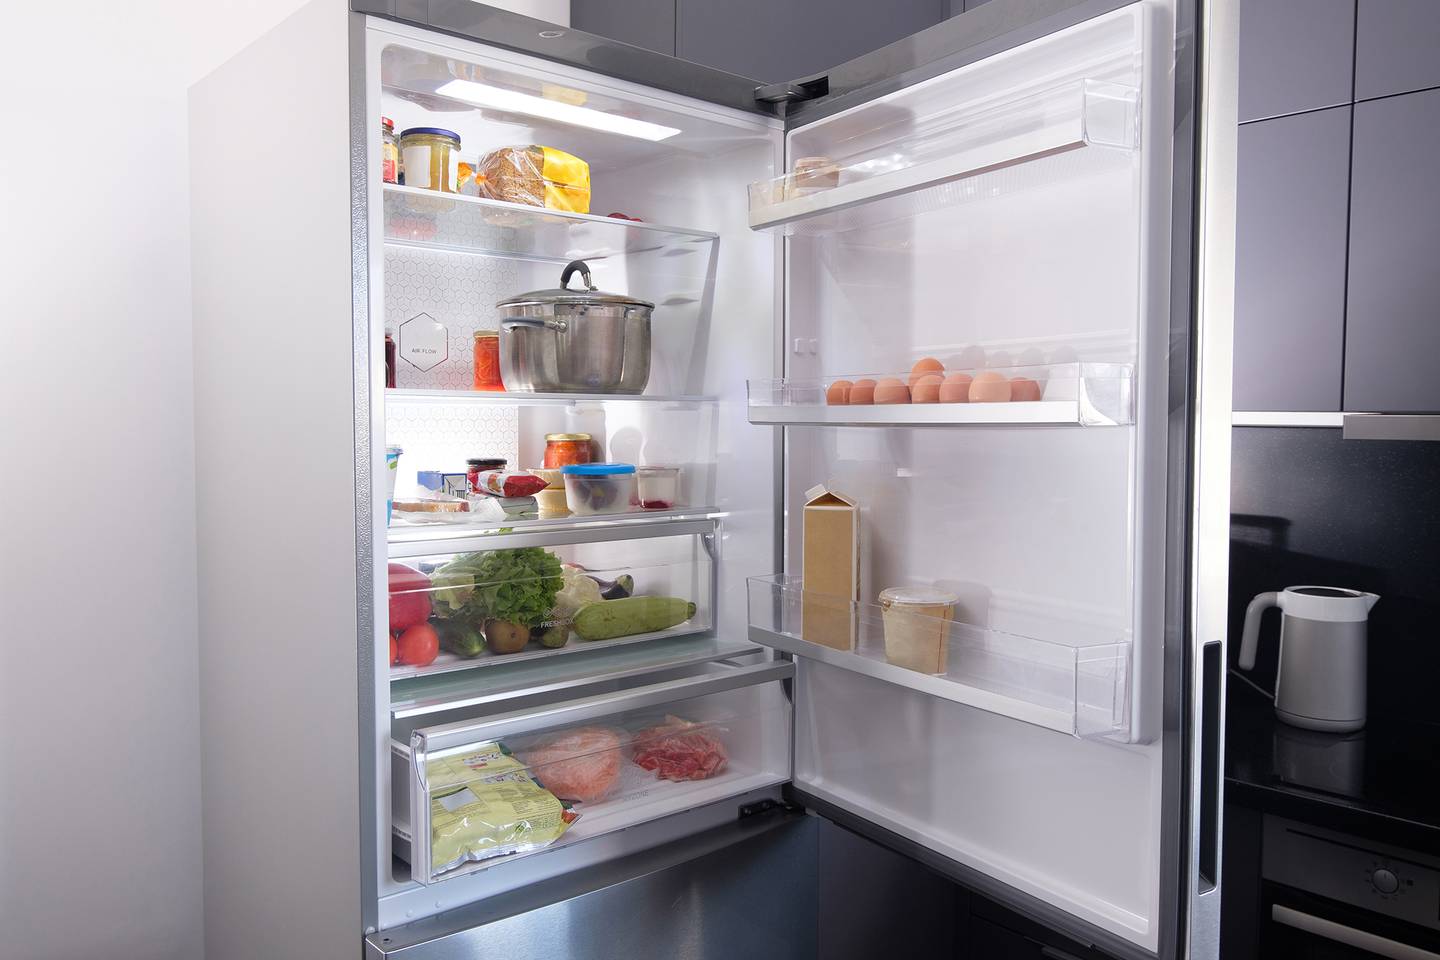 Los apagones pueden afectar las comidas que tenemos refrigeradas o congeladas.

Fotografía: Shutterstock